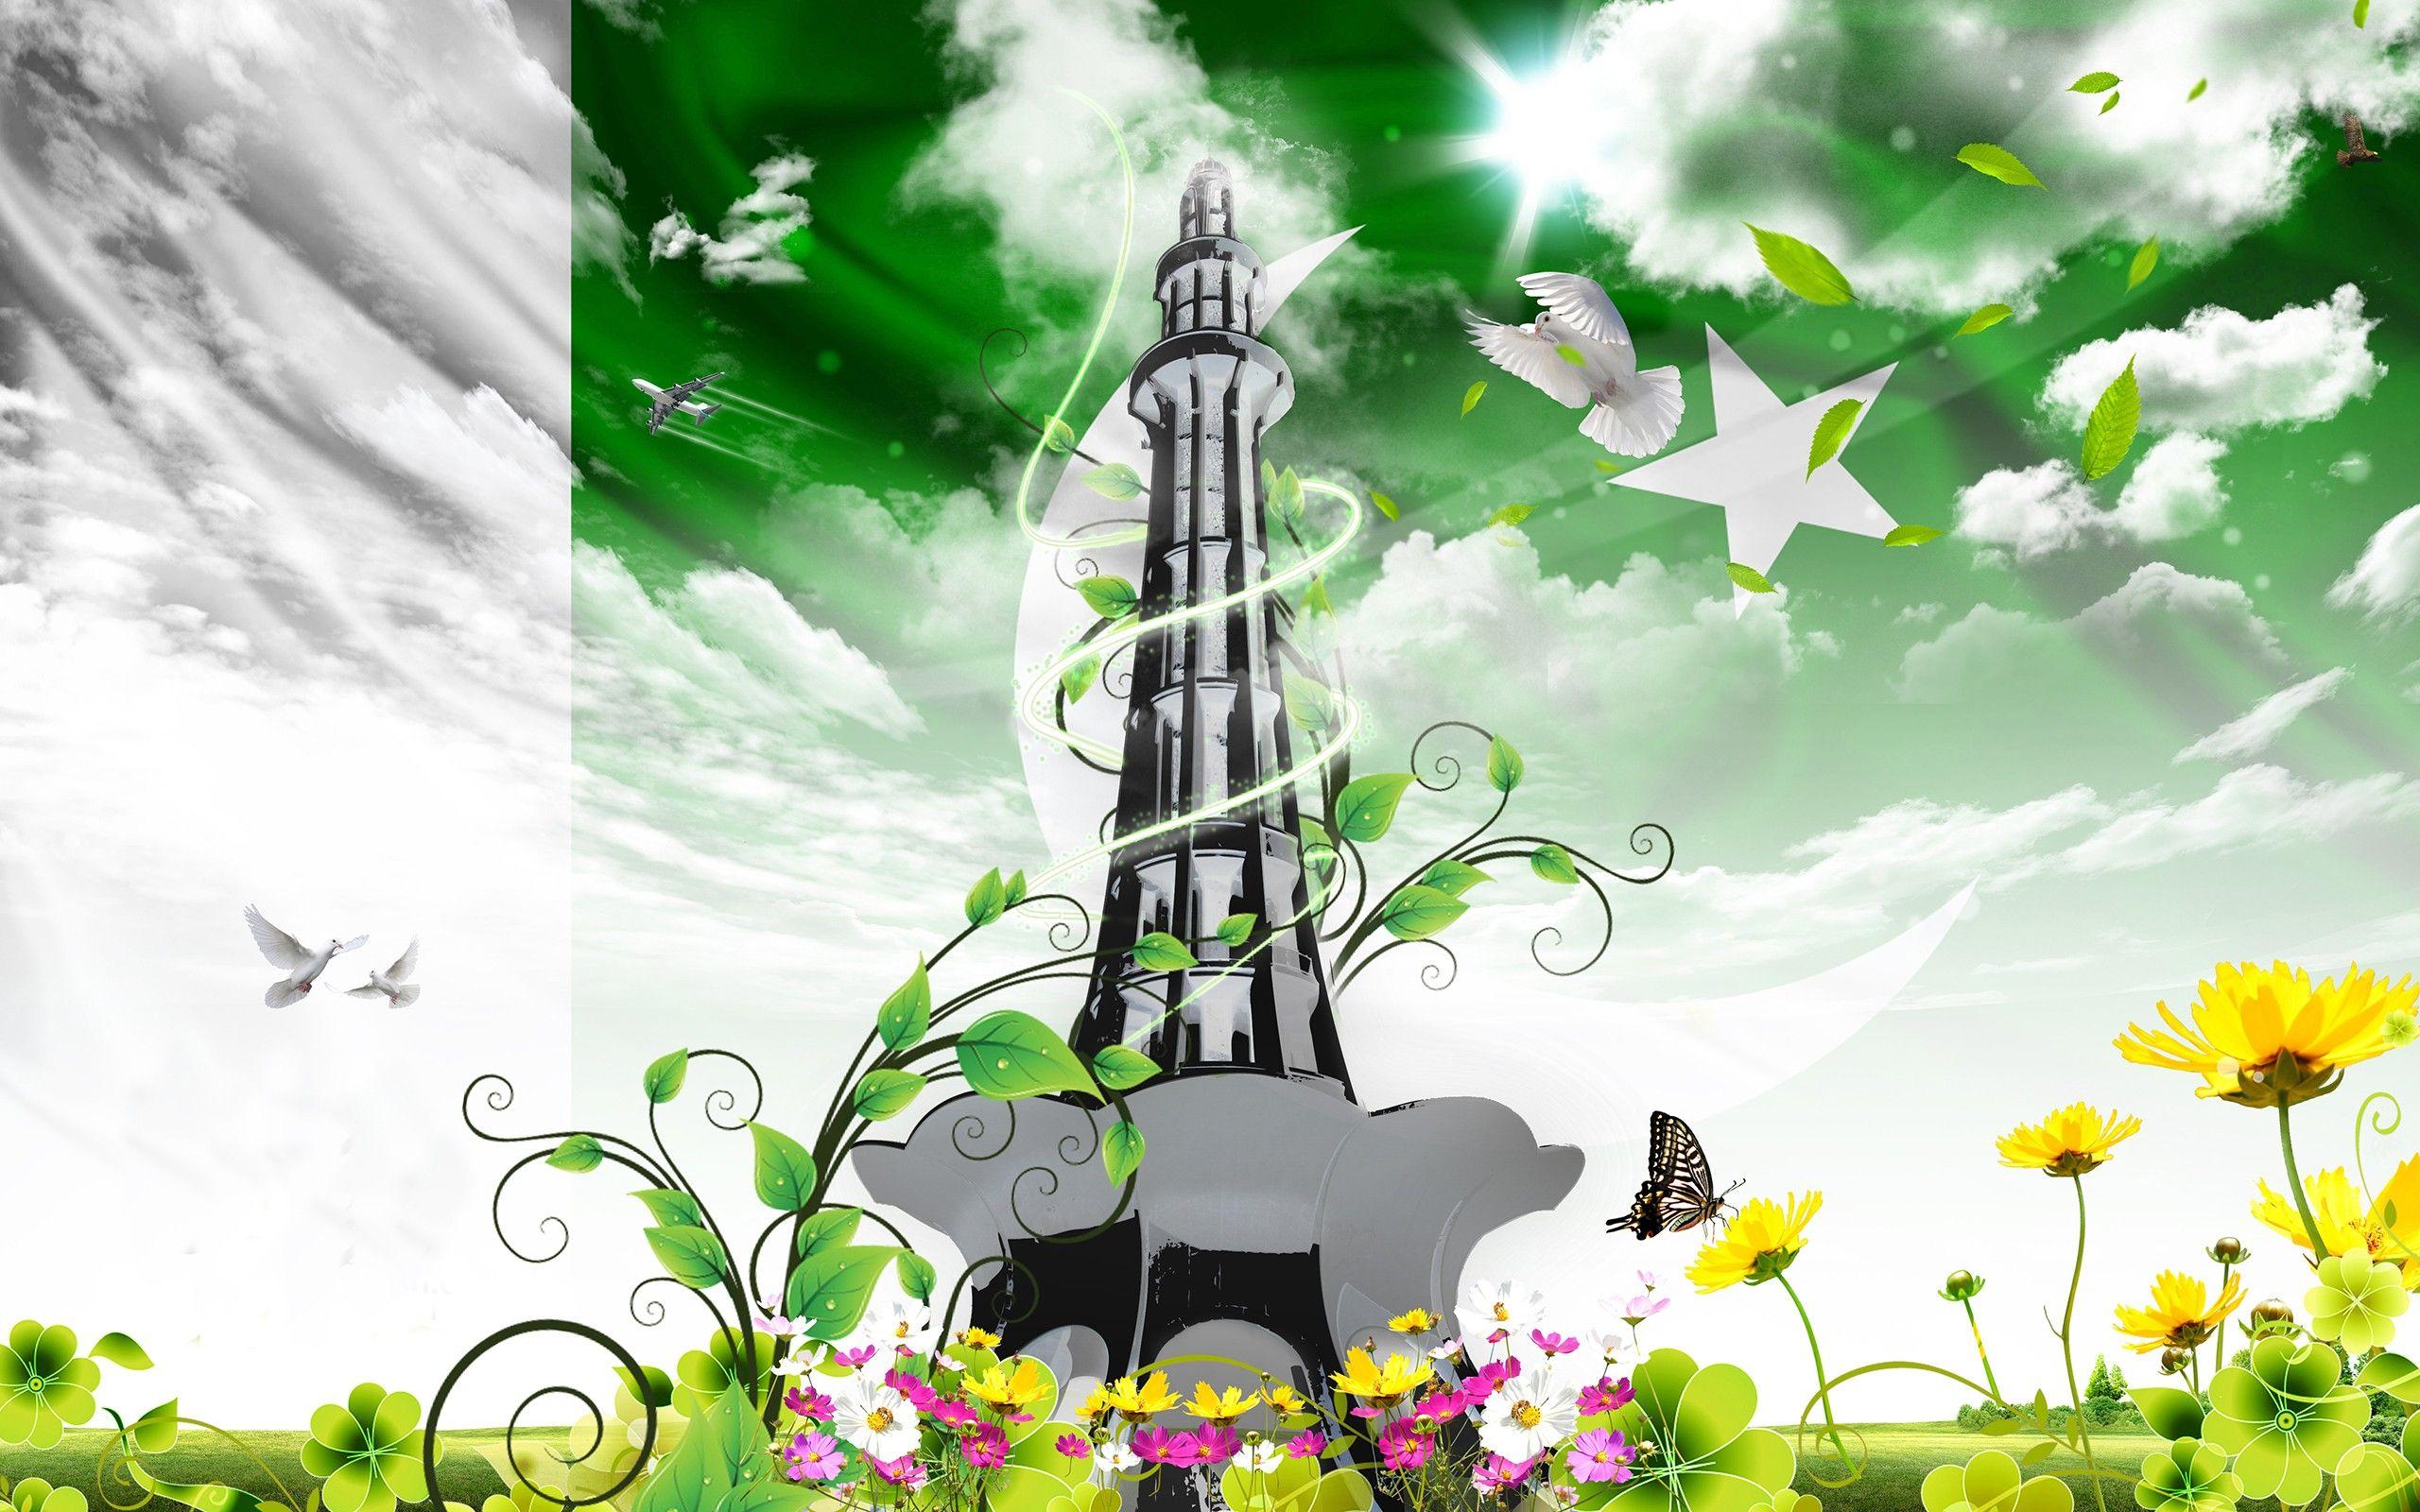 Minar e Pakistan Wallpaper 3 - [2560x1600]